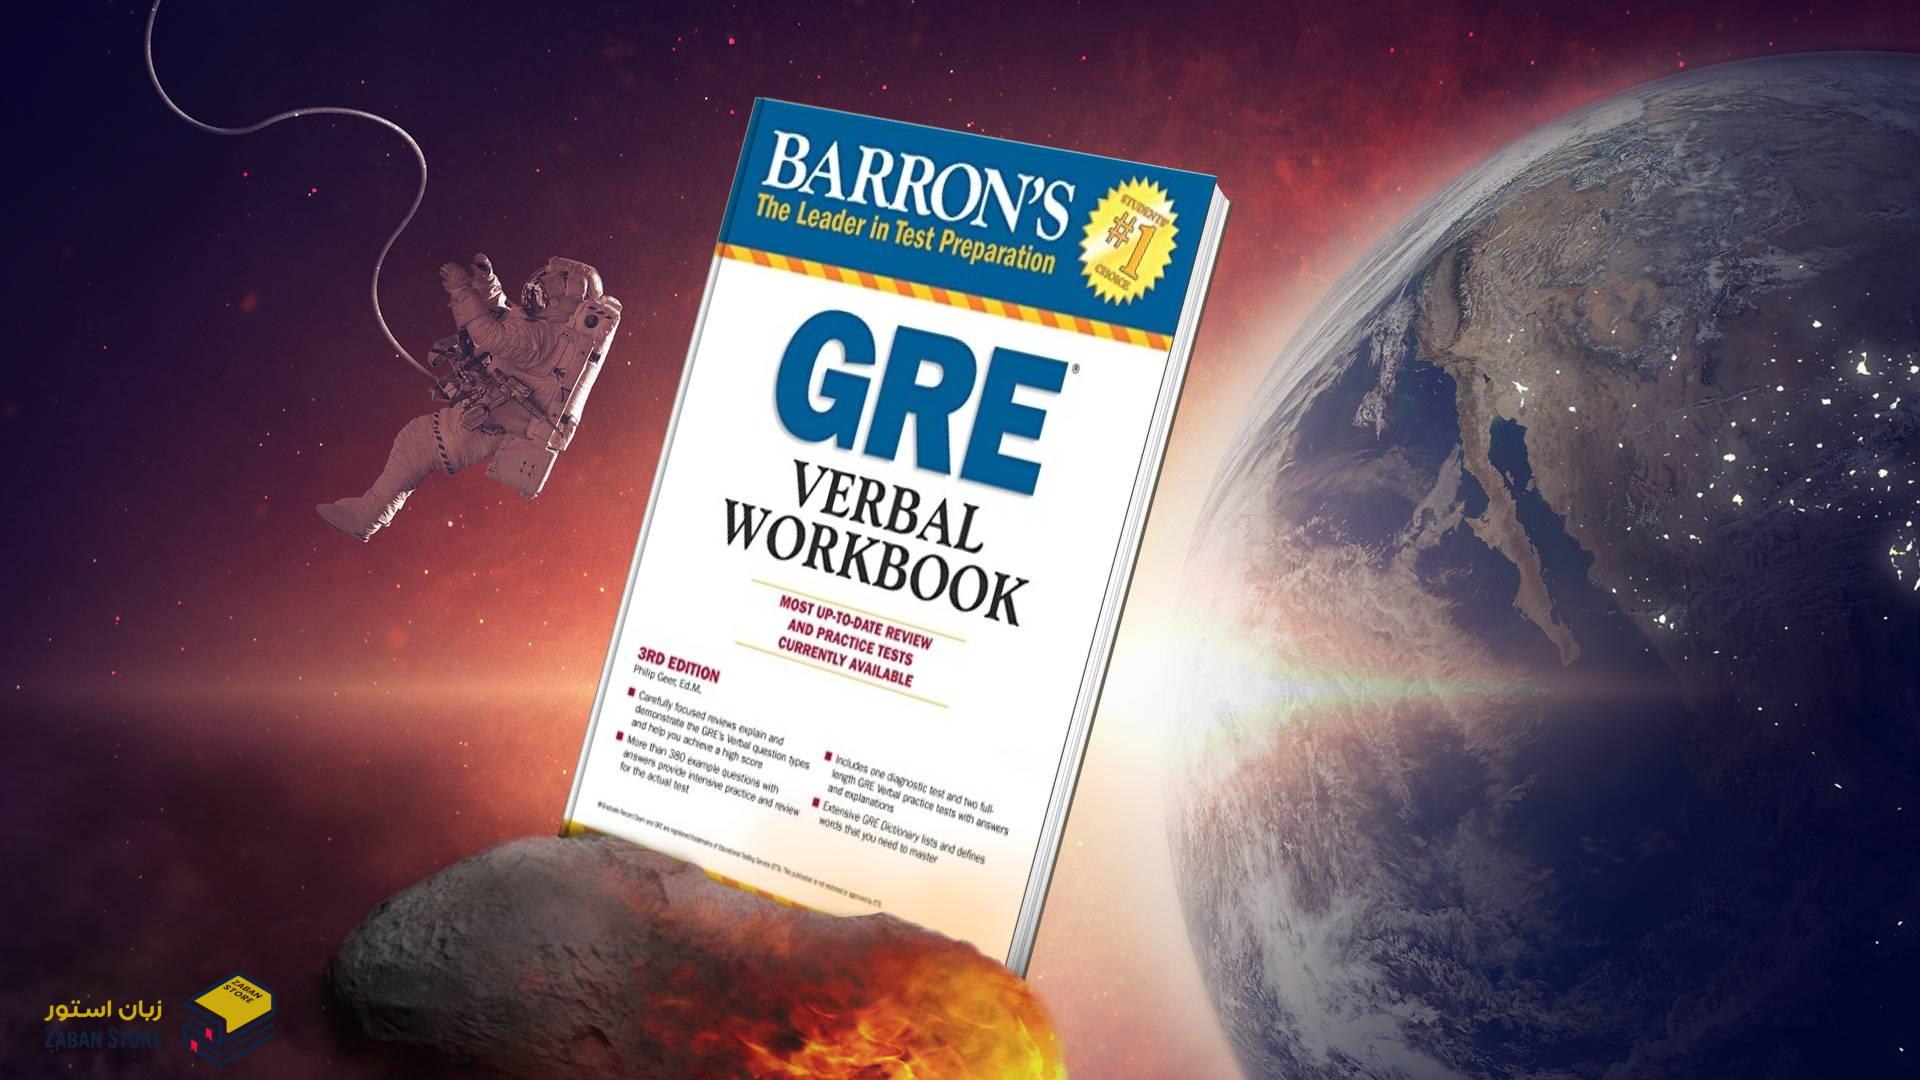 خرید کتاب آزمون زبان جی ار ای | Barrons GRE Verbal Workbook 2nd Edition | بارونز جی آر ای وربال ورک بوک